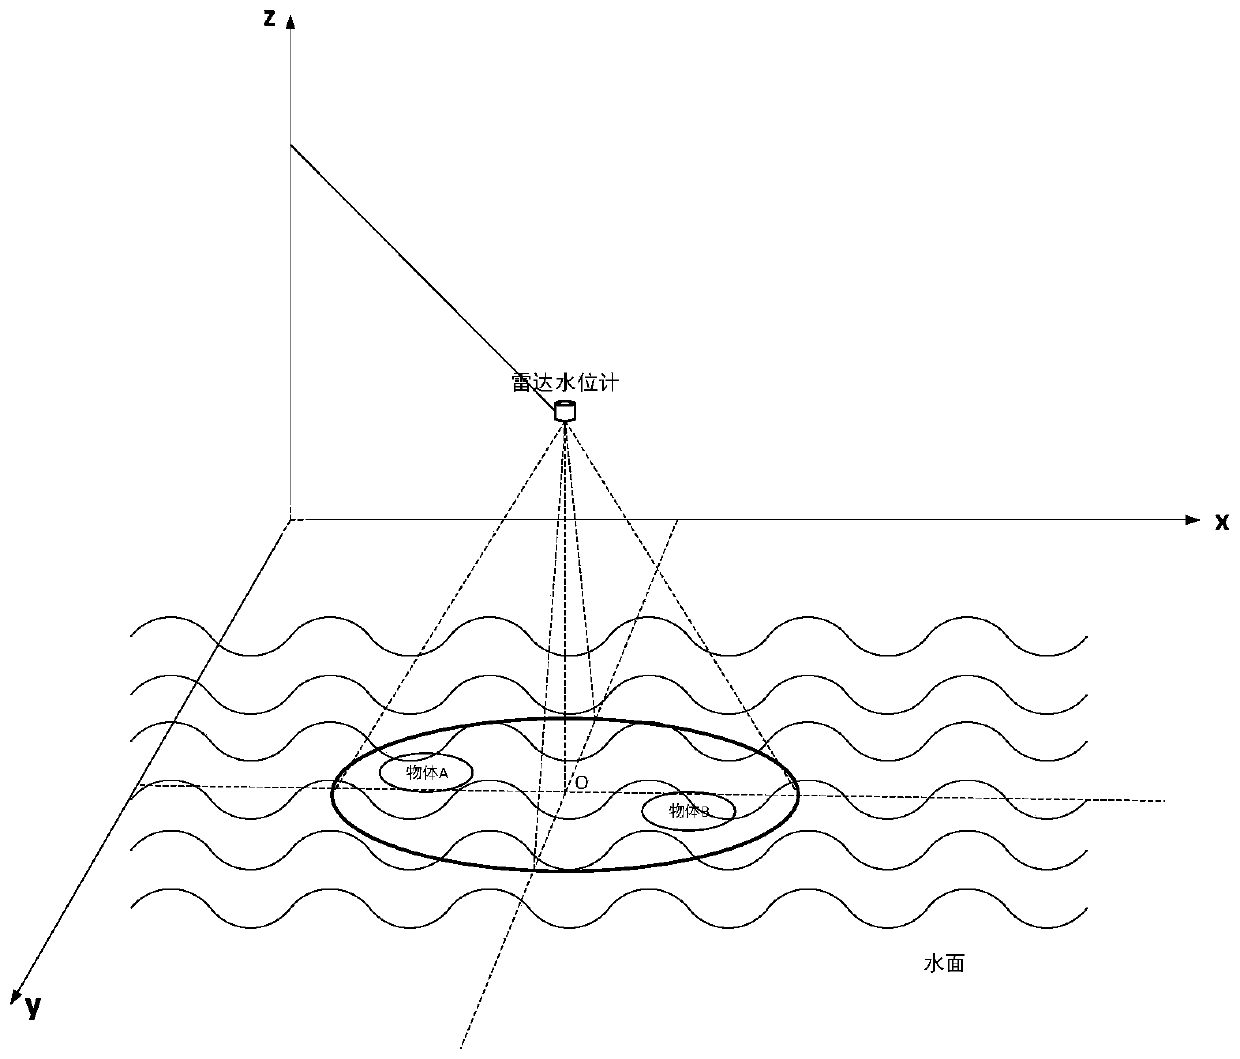 Interference elimination method for water level measurement based on planar radar water level gauge